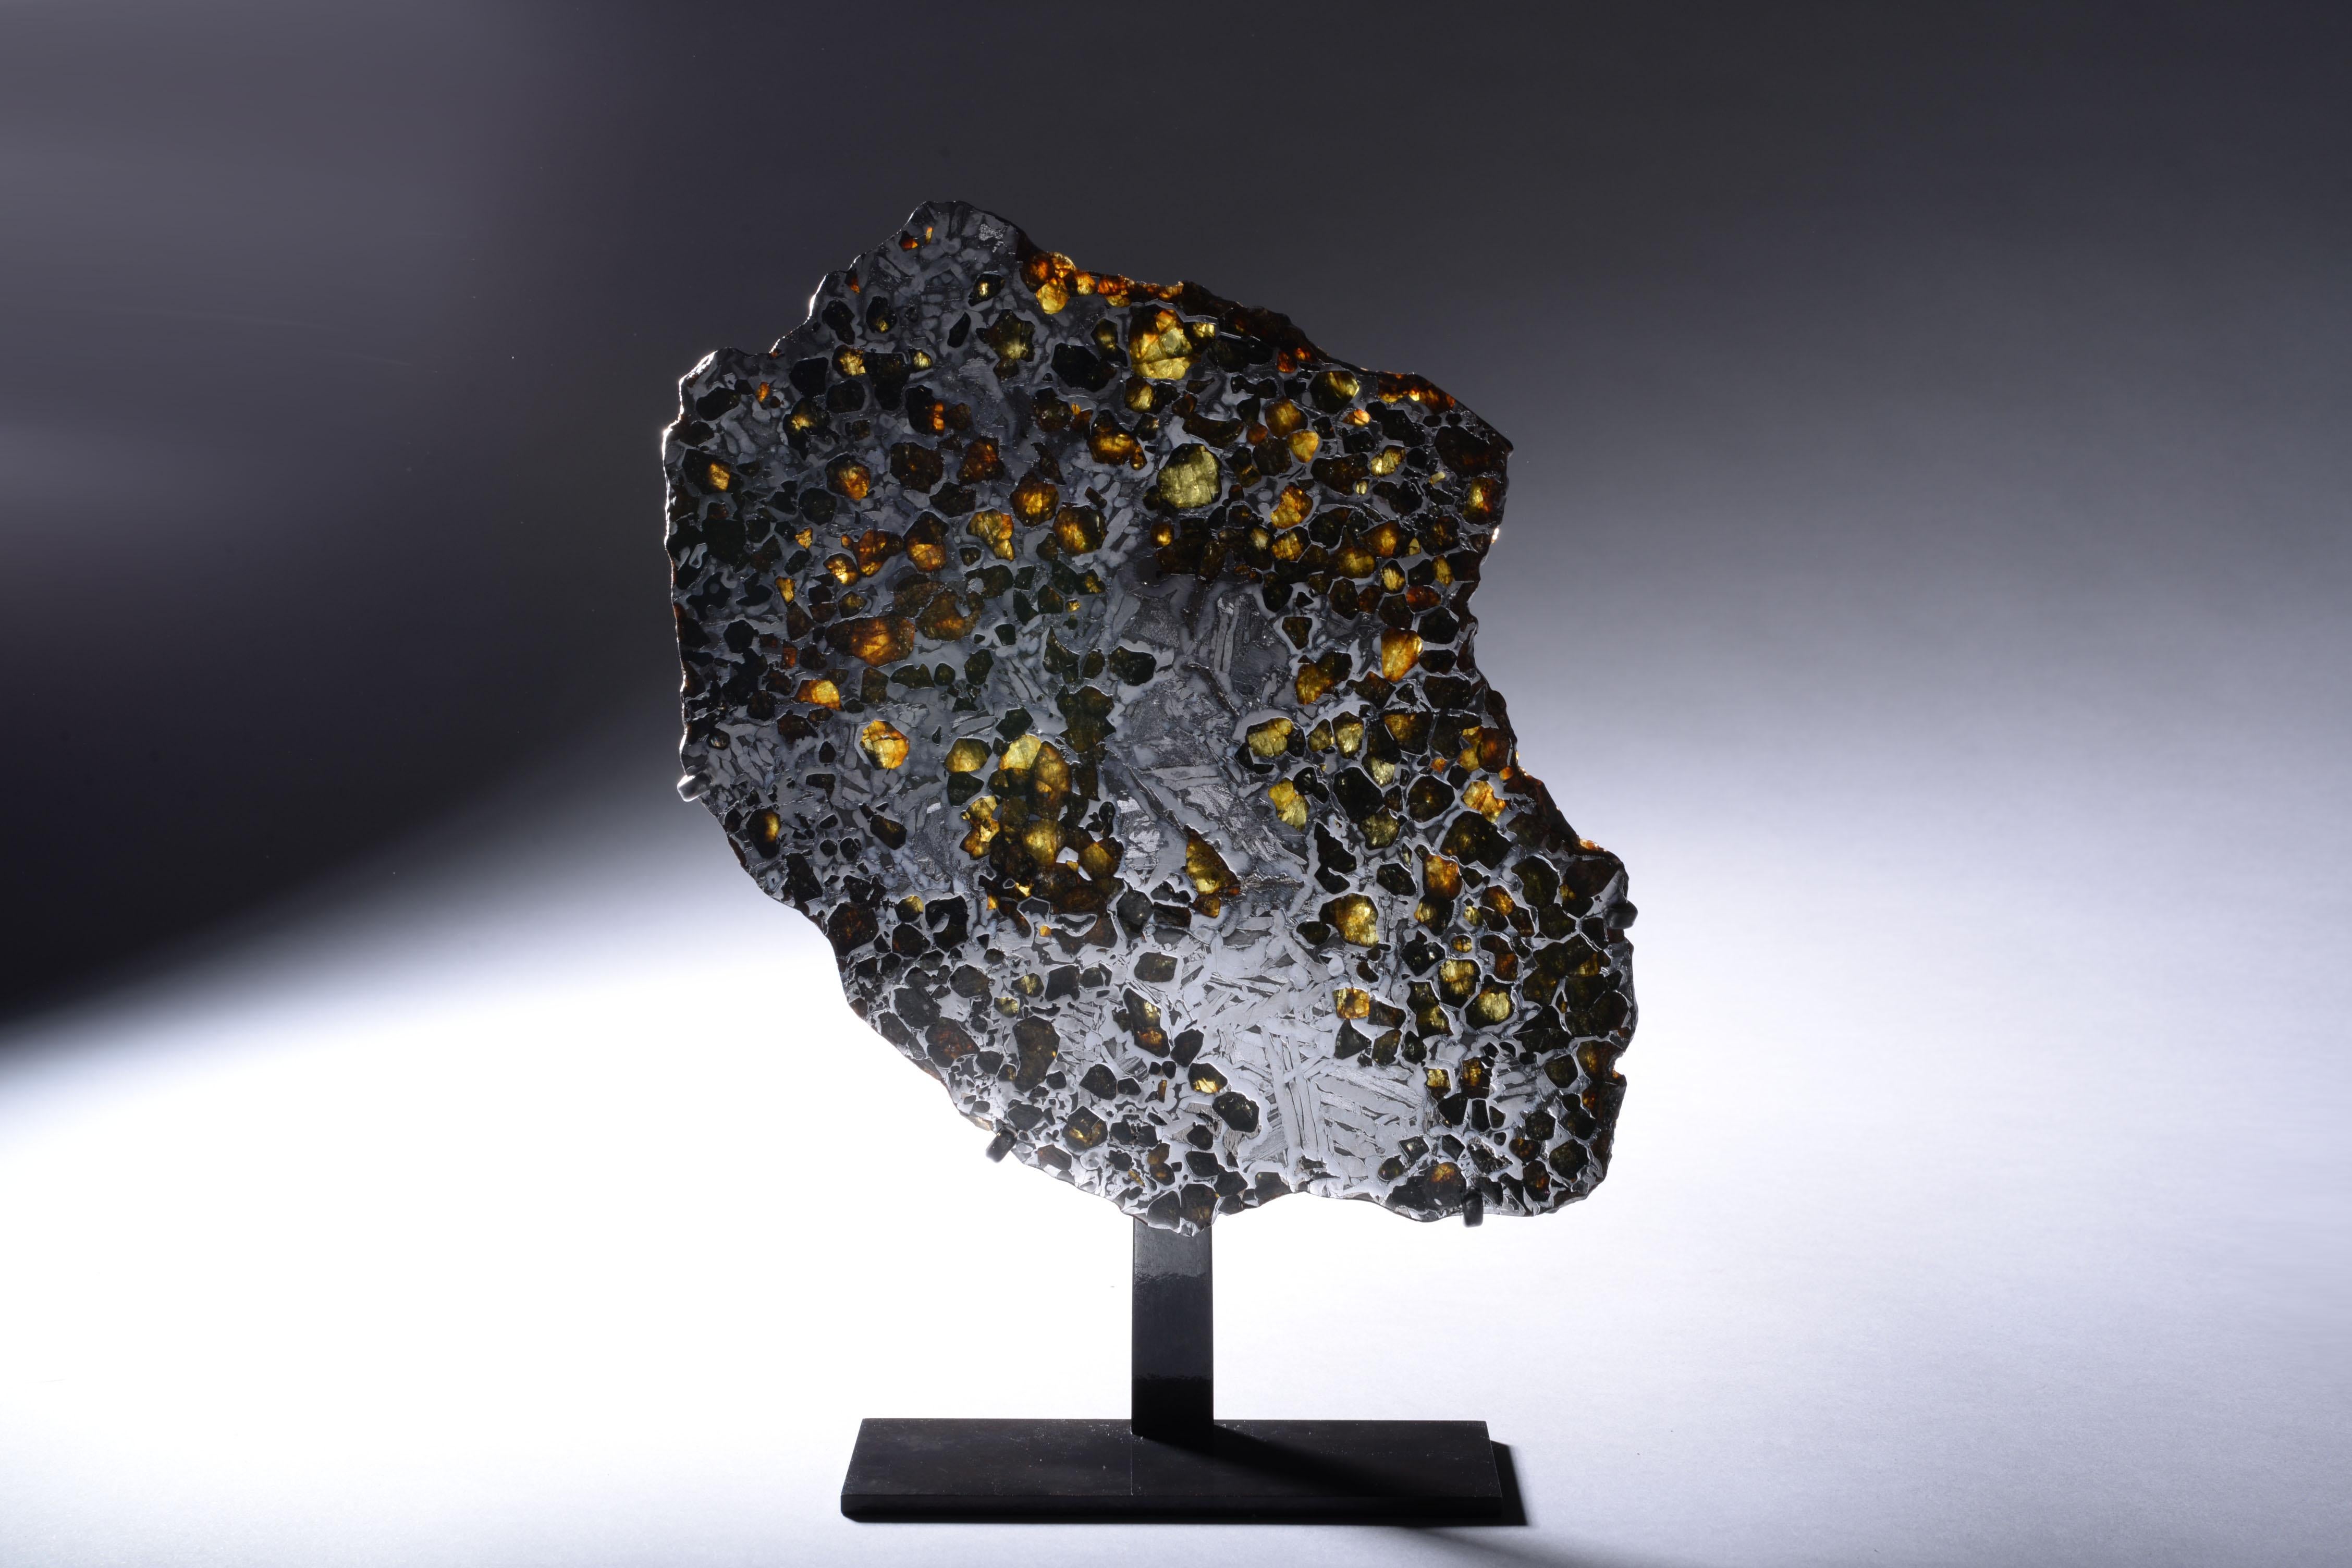 Coupe transversale de la météorite Seymchan
Pallasite

Constituant moins de 0,2 % de toutes les météorites, les pallasites, composées d'une matrice de fer-nickel entrelacée de pierres précieuses d'olivine de couleur ambre, sont peut-être les